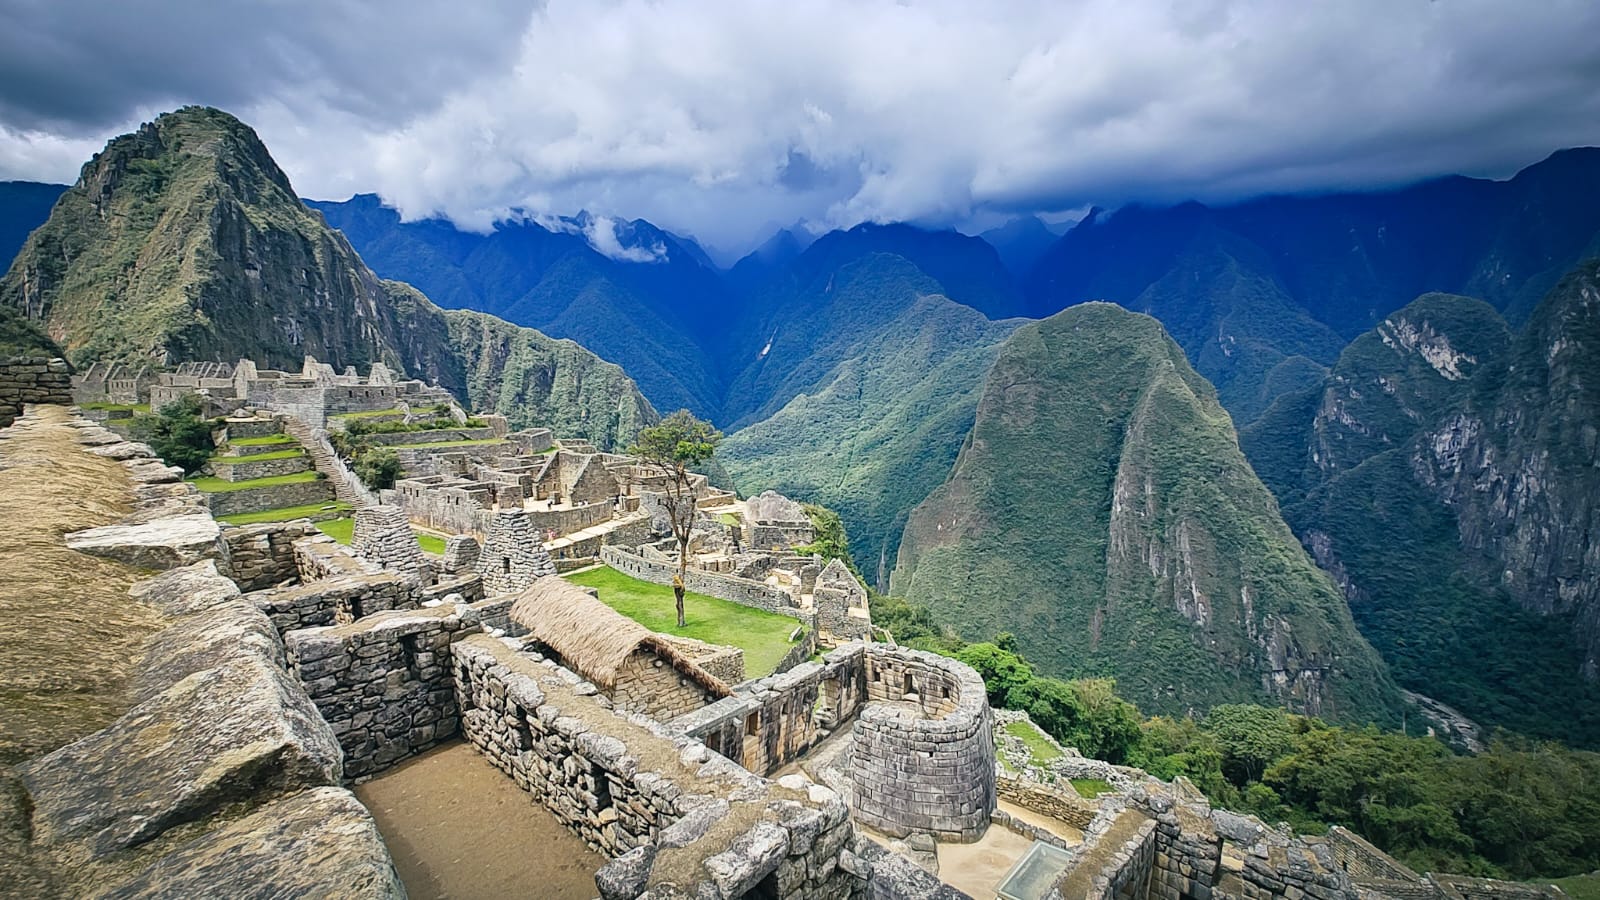 Por nueva modalidad en ventaOperadores temen privatización de Machu Picchu